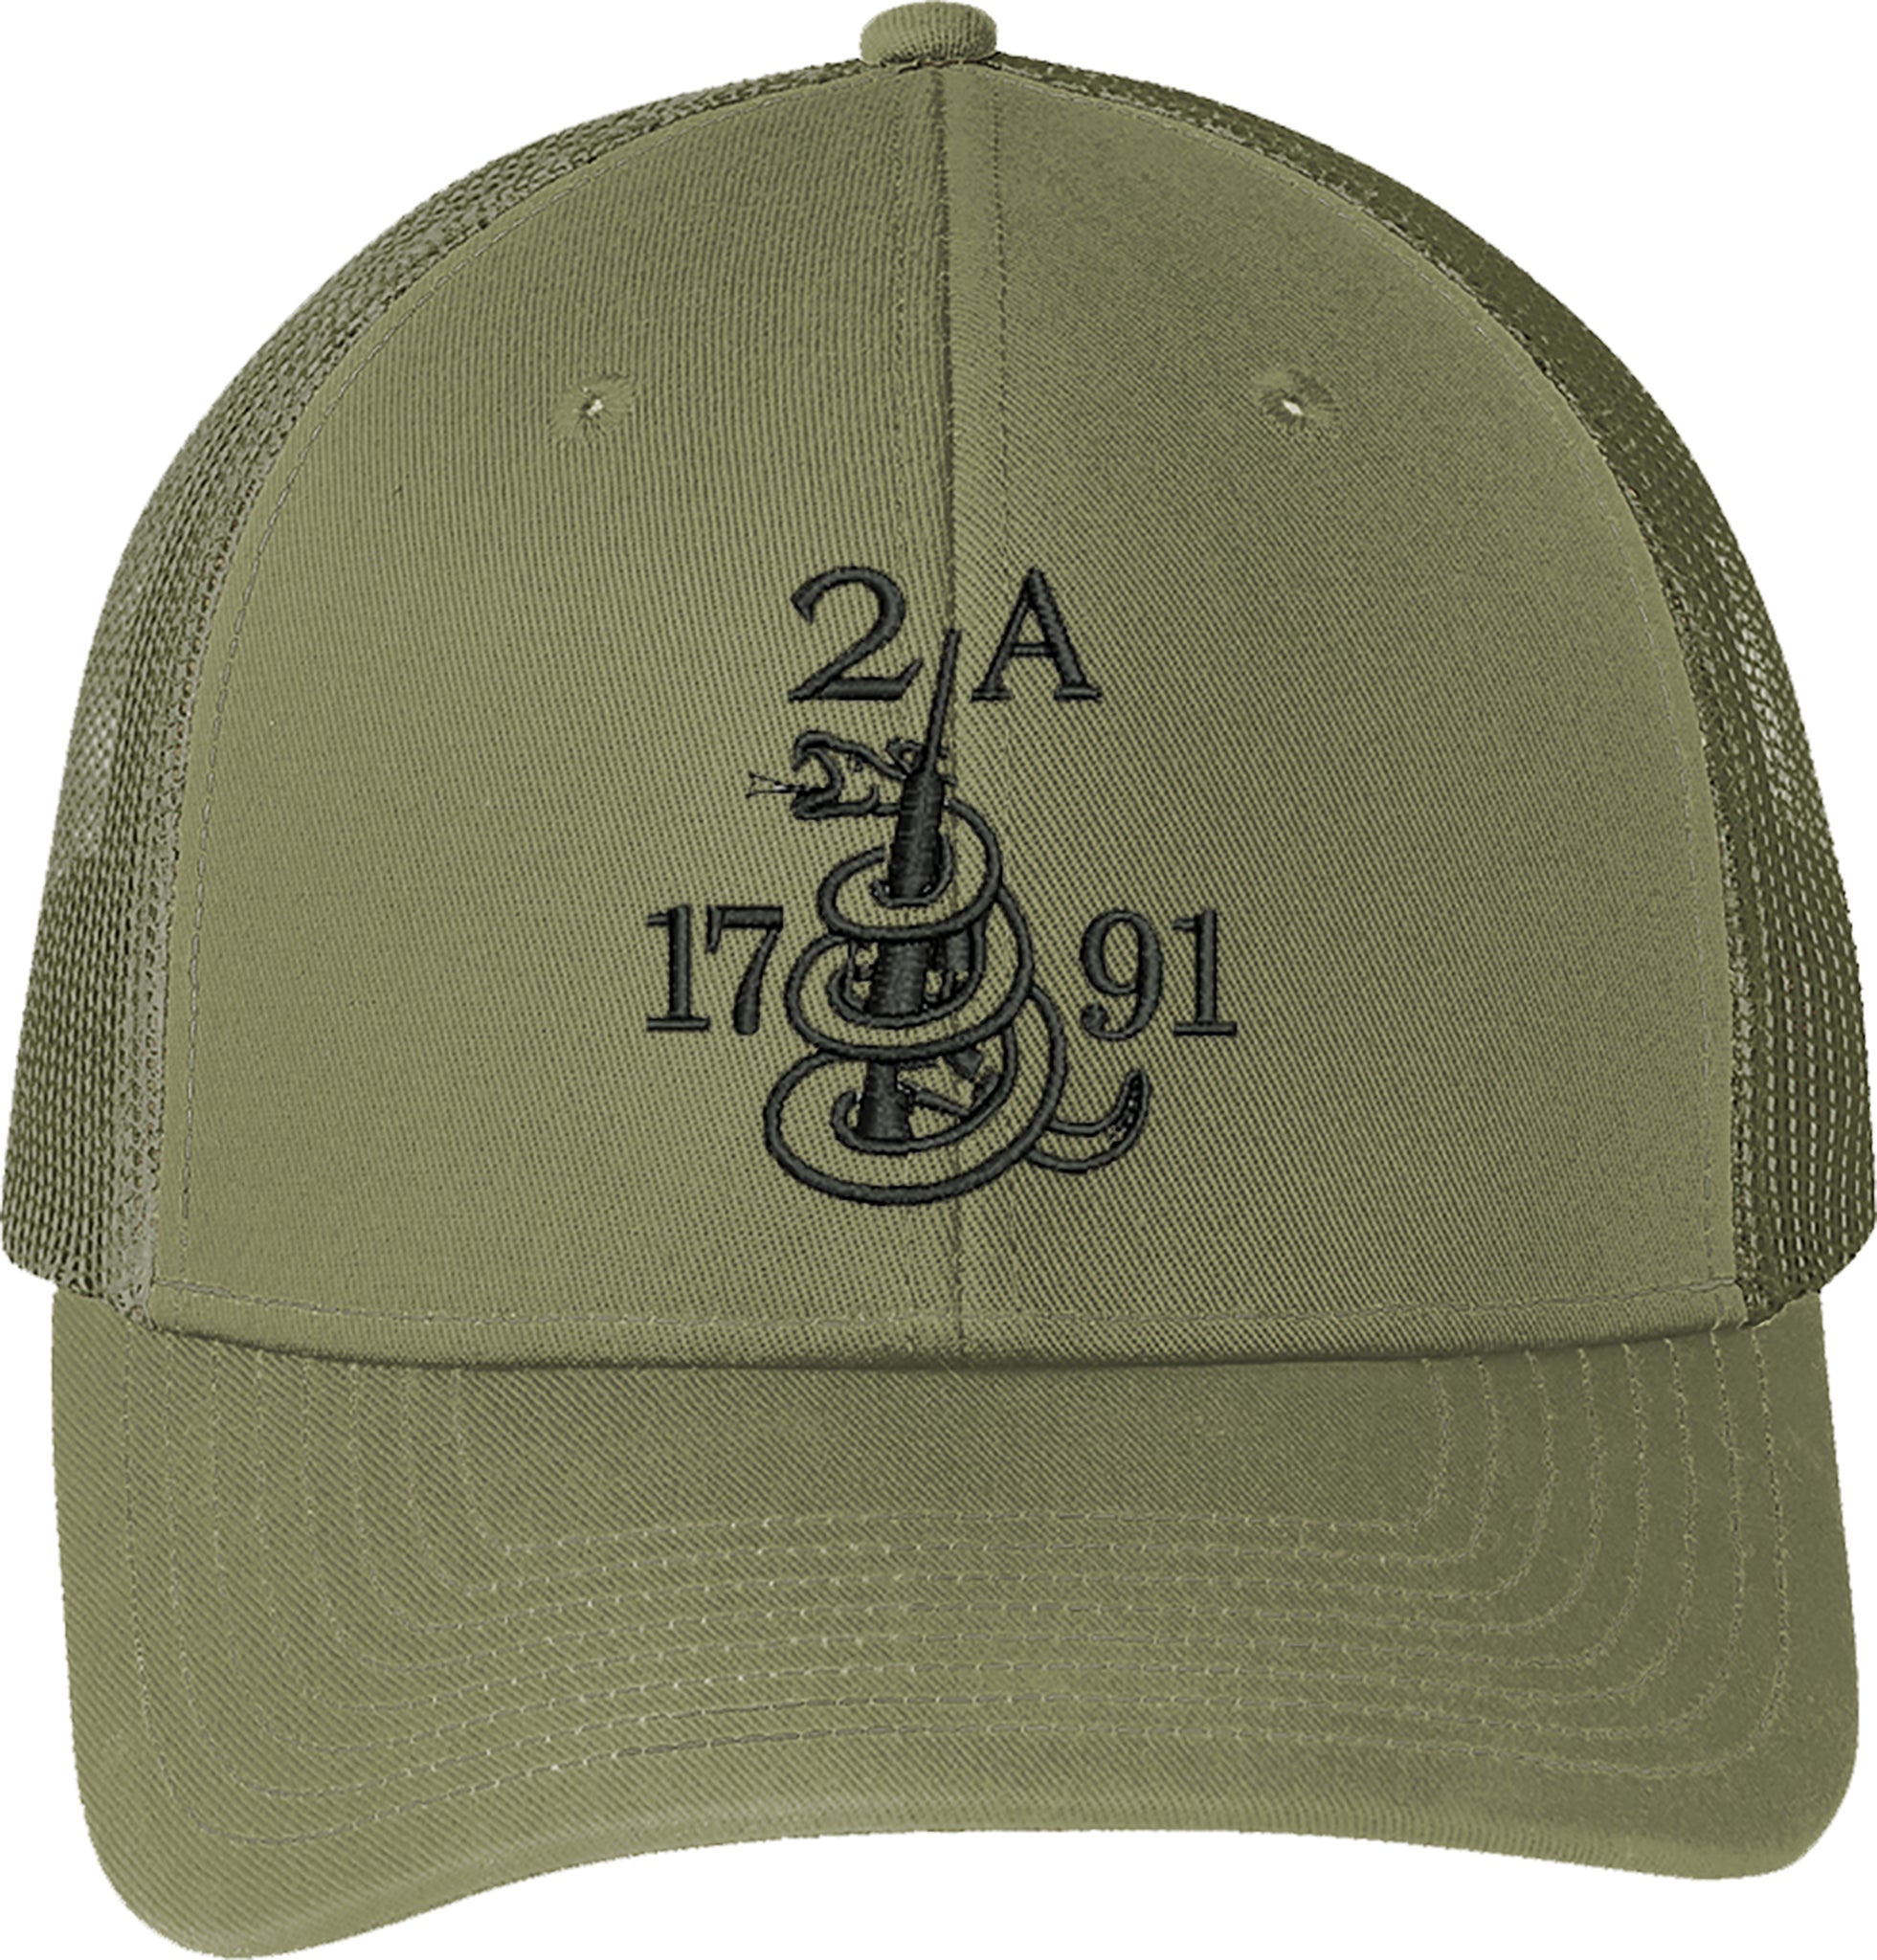 Gun 2A 1791 AR15 2nd Amendment Guns Embroidered Baseball One Size Fits All Structured Cap